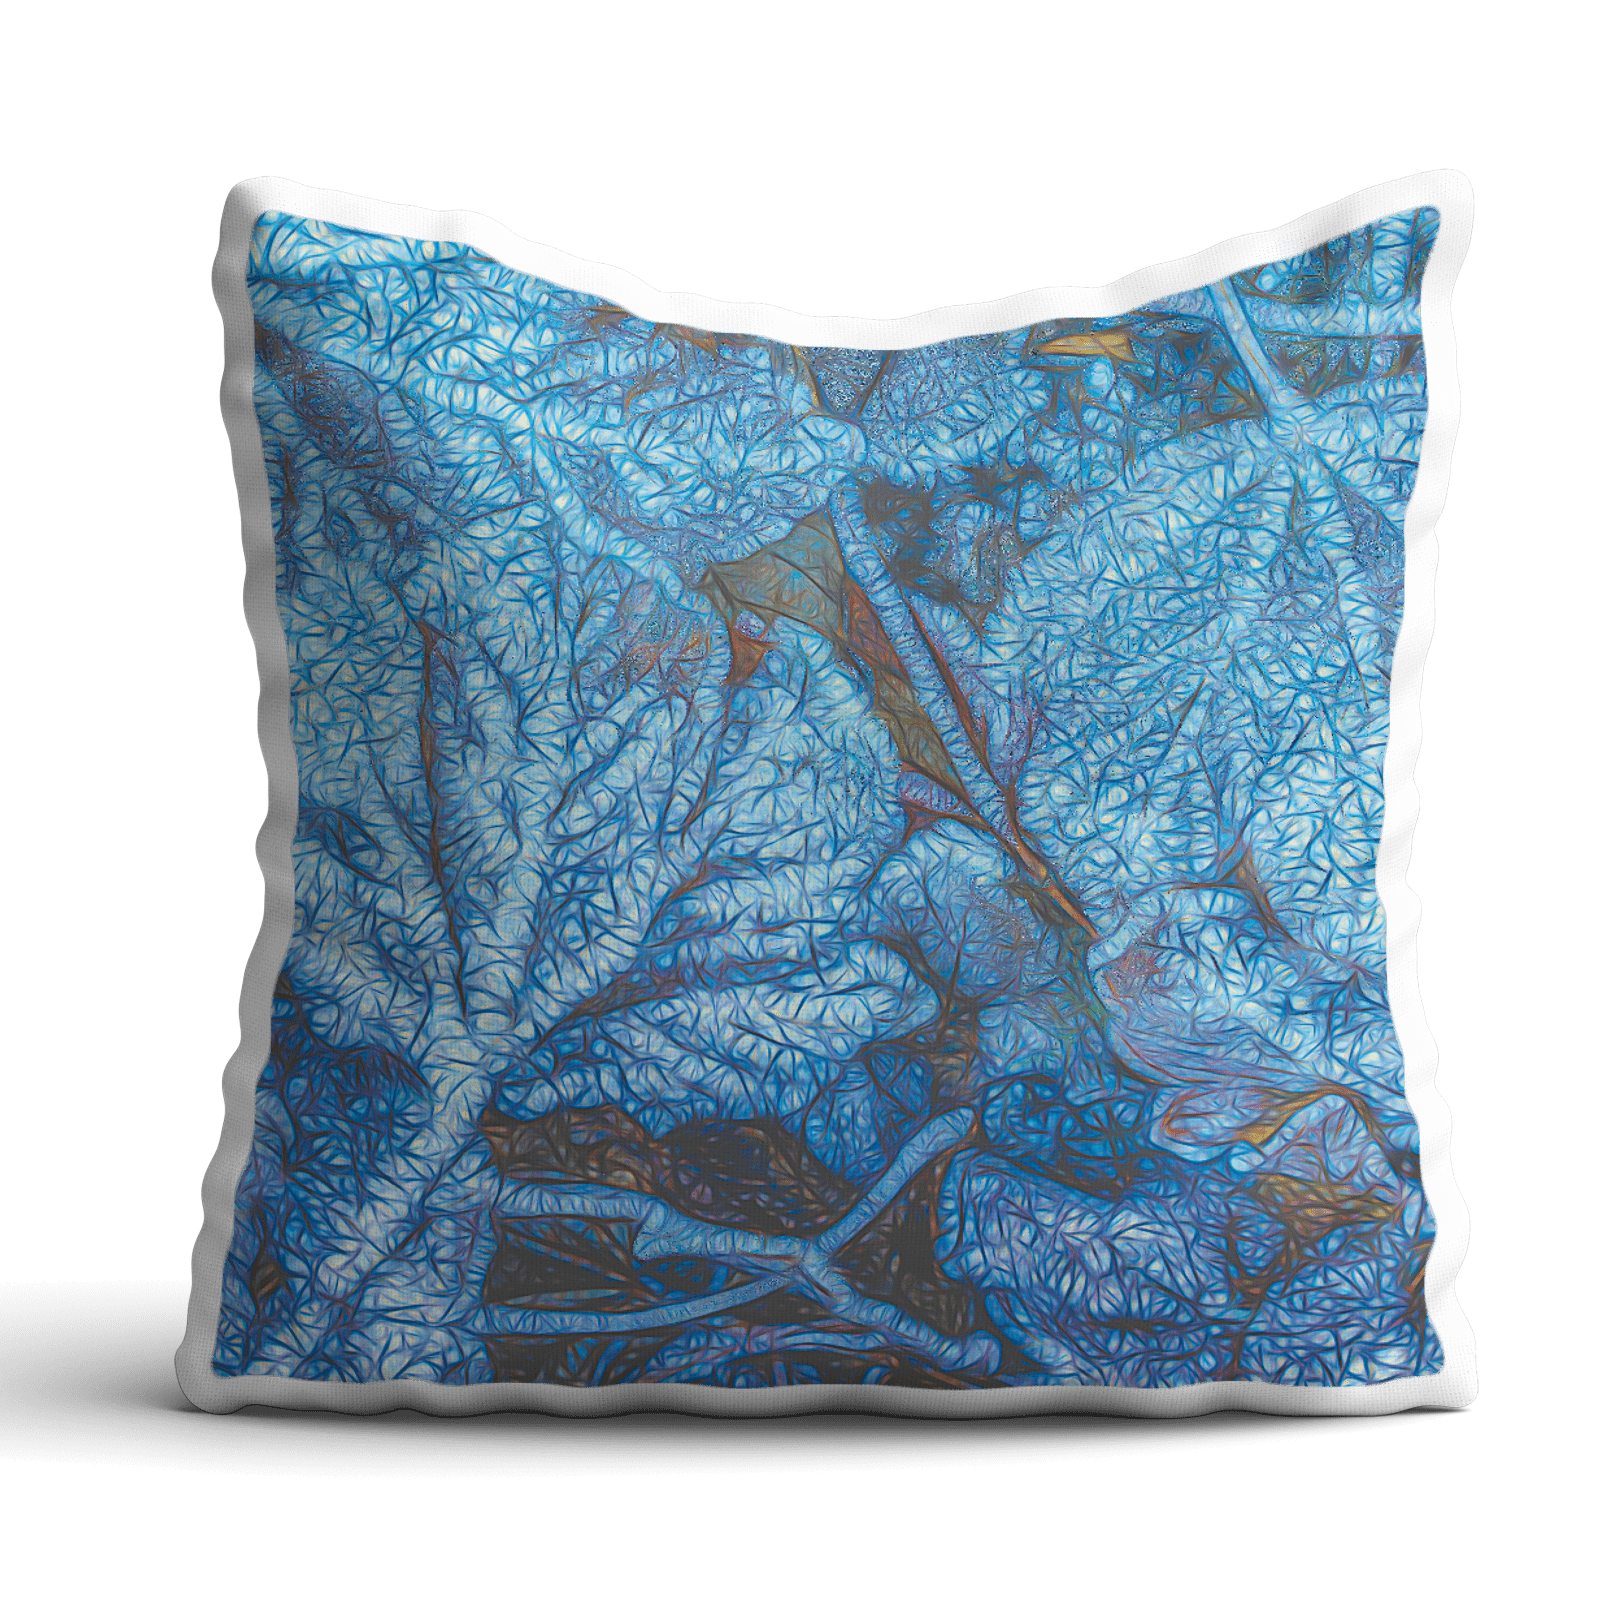 Frozen leafes, Meditation Pillow/Cushion Premium 60x60cm, by Sensus Studio Design